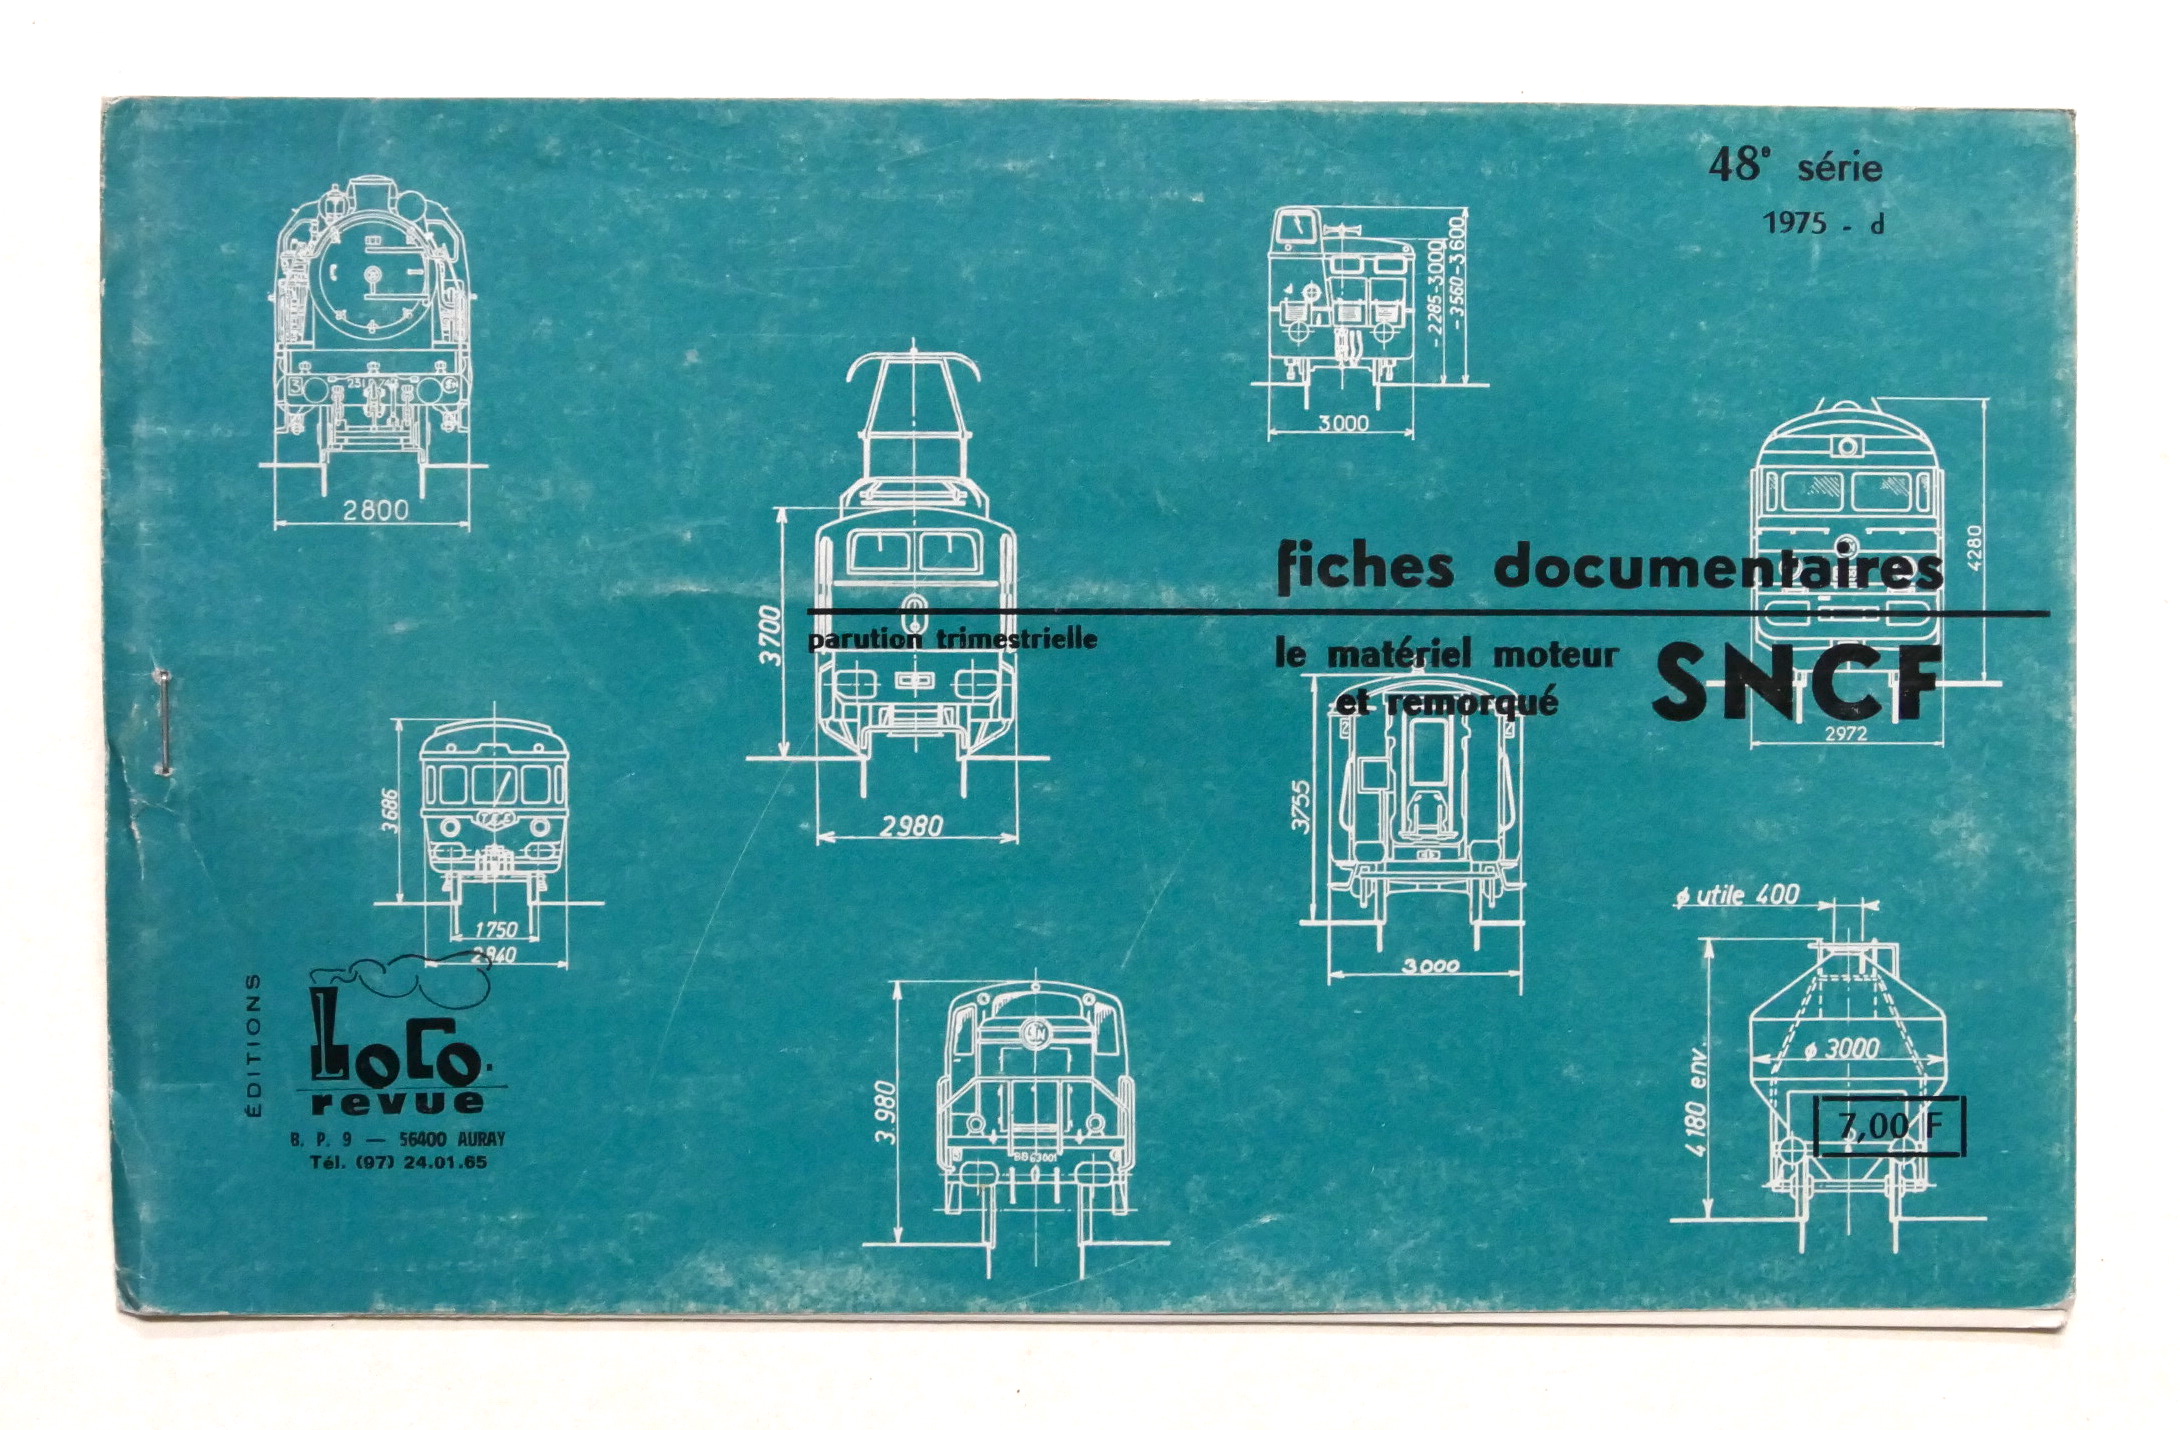 Ferrovie SNCF - Fiches documentaires le materiel moteur et remorqué …